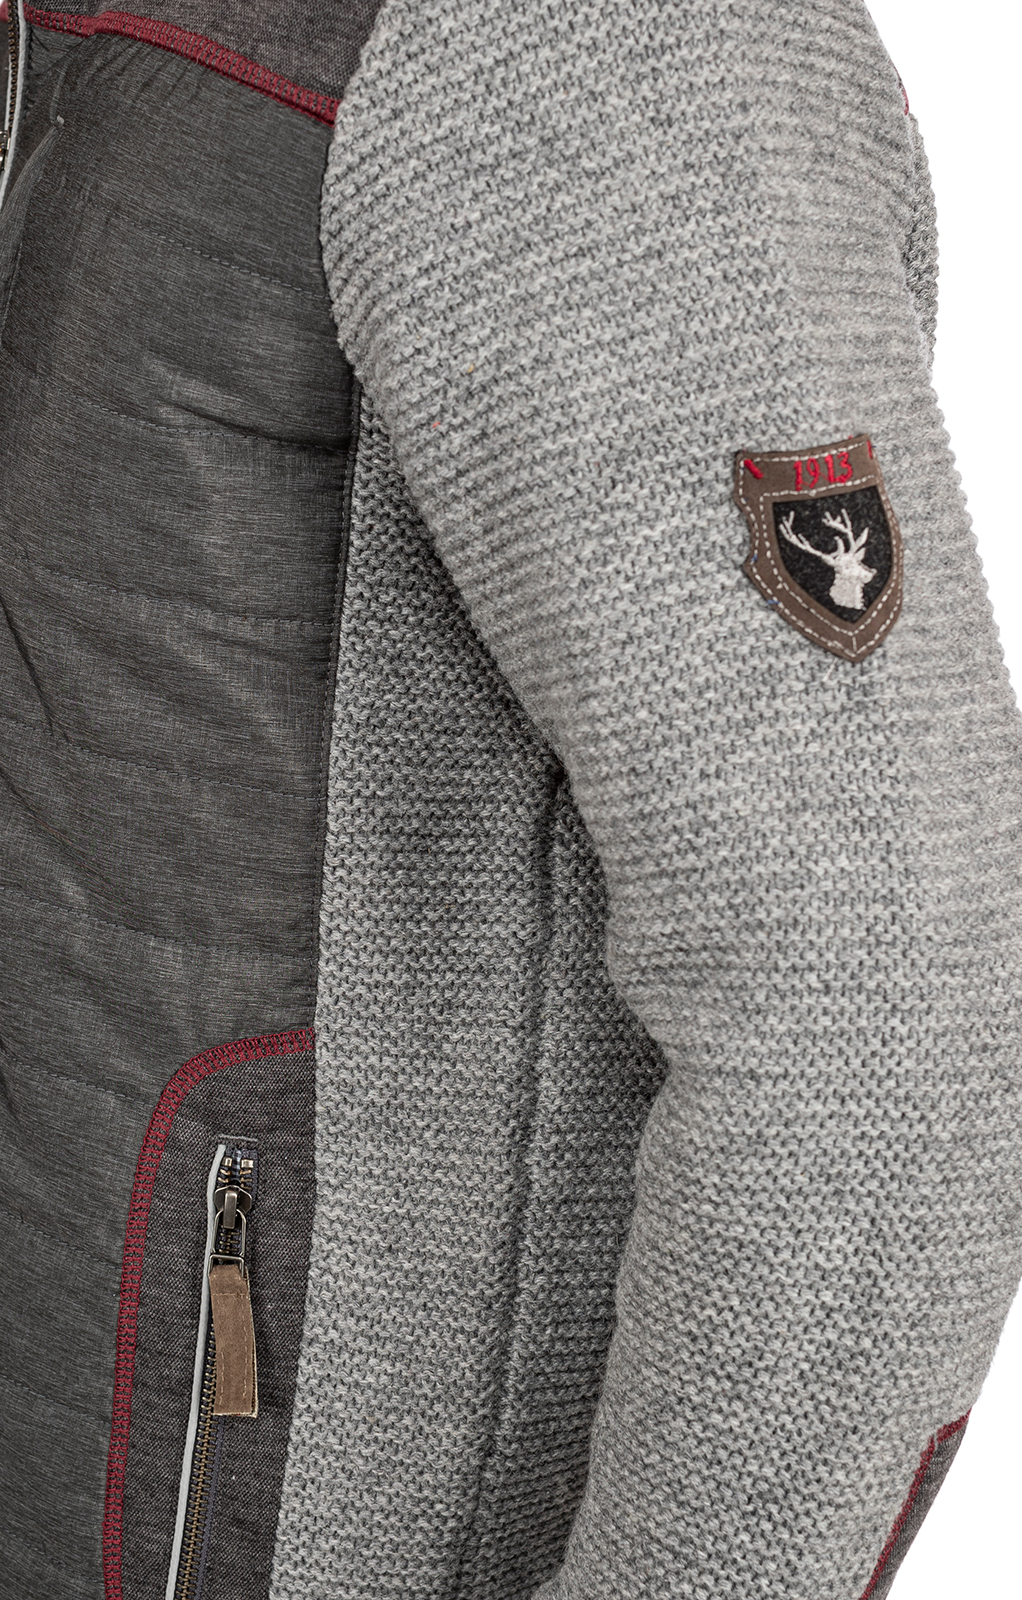 weitere Bilder von Outdoor German traditional jacket NACHBAR anthracite gray